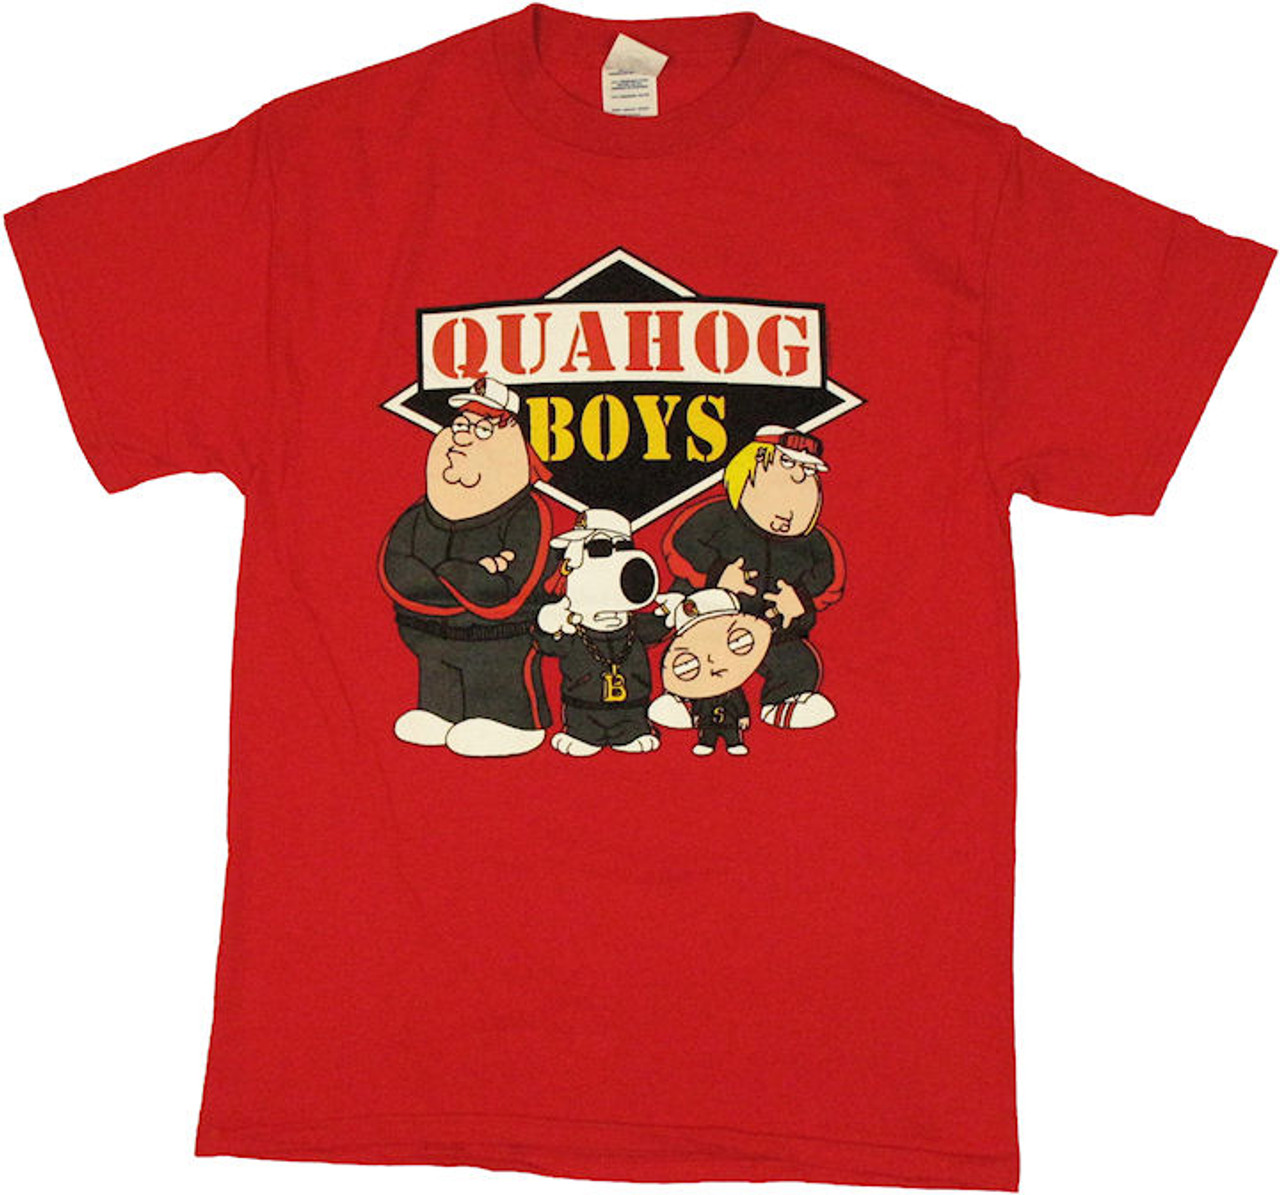 family guy quahog boys t shirt 3 74845.1 - Family Guy Shop